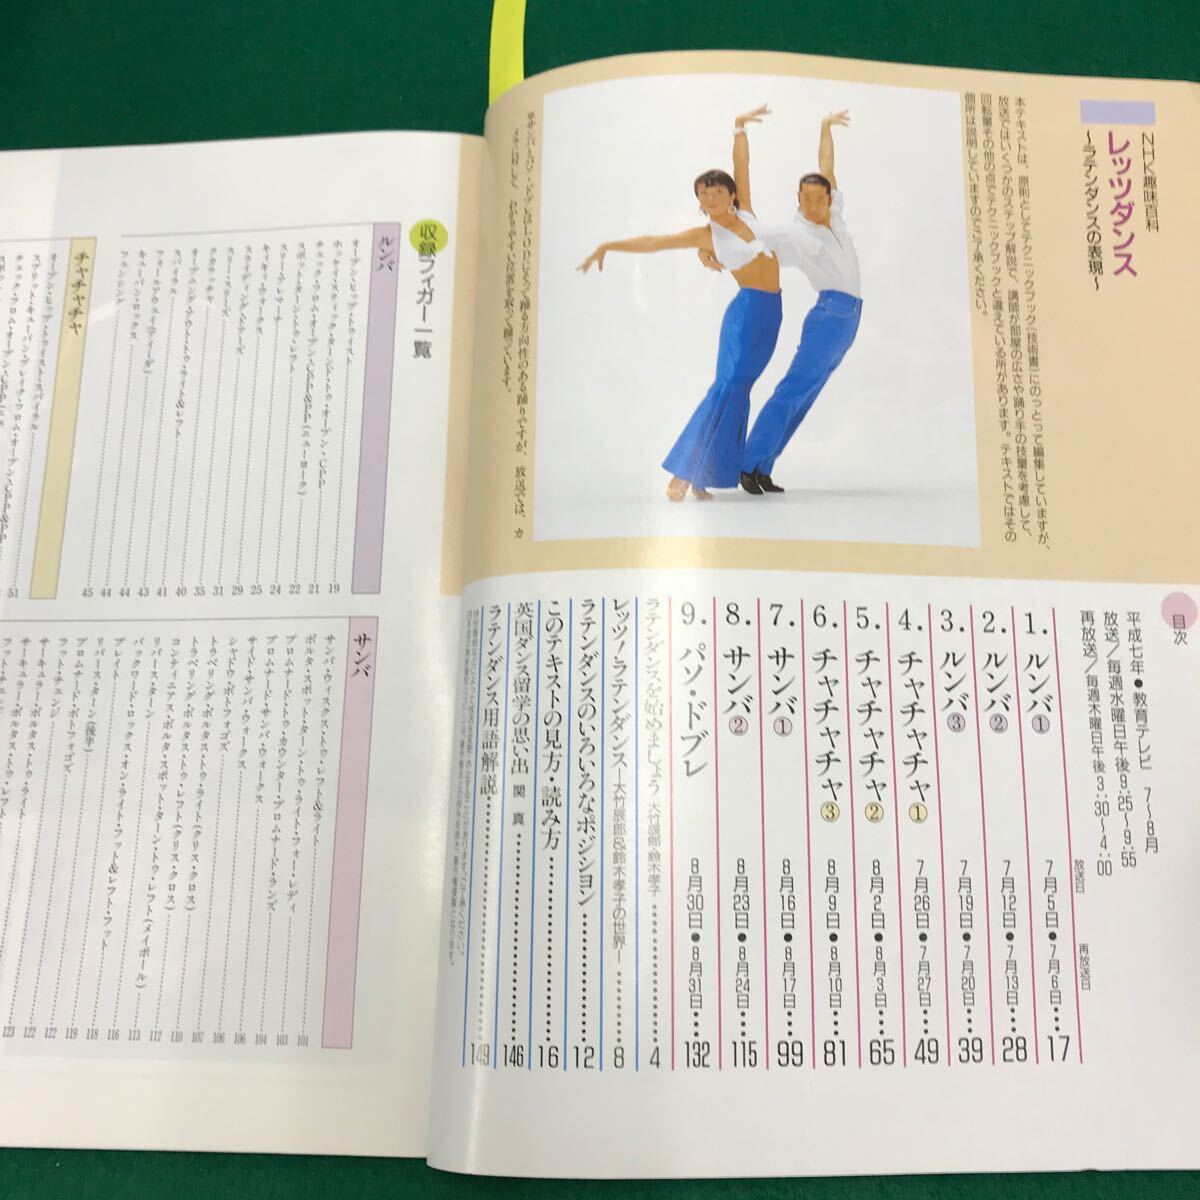 A16-070 NHK хобби различные предметы let's Dance латиноамериканский Dance. таблица на данный момент эпоха Heisei 7 год 7 месяц ~8 месяц 